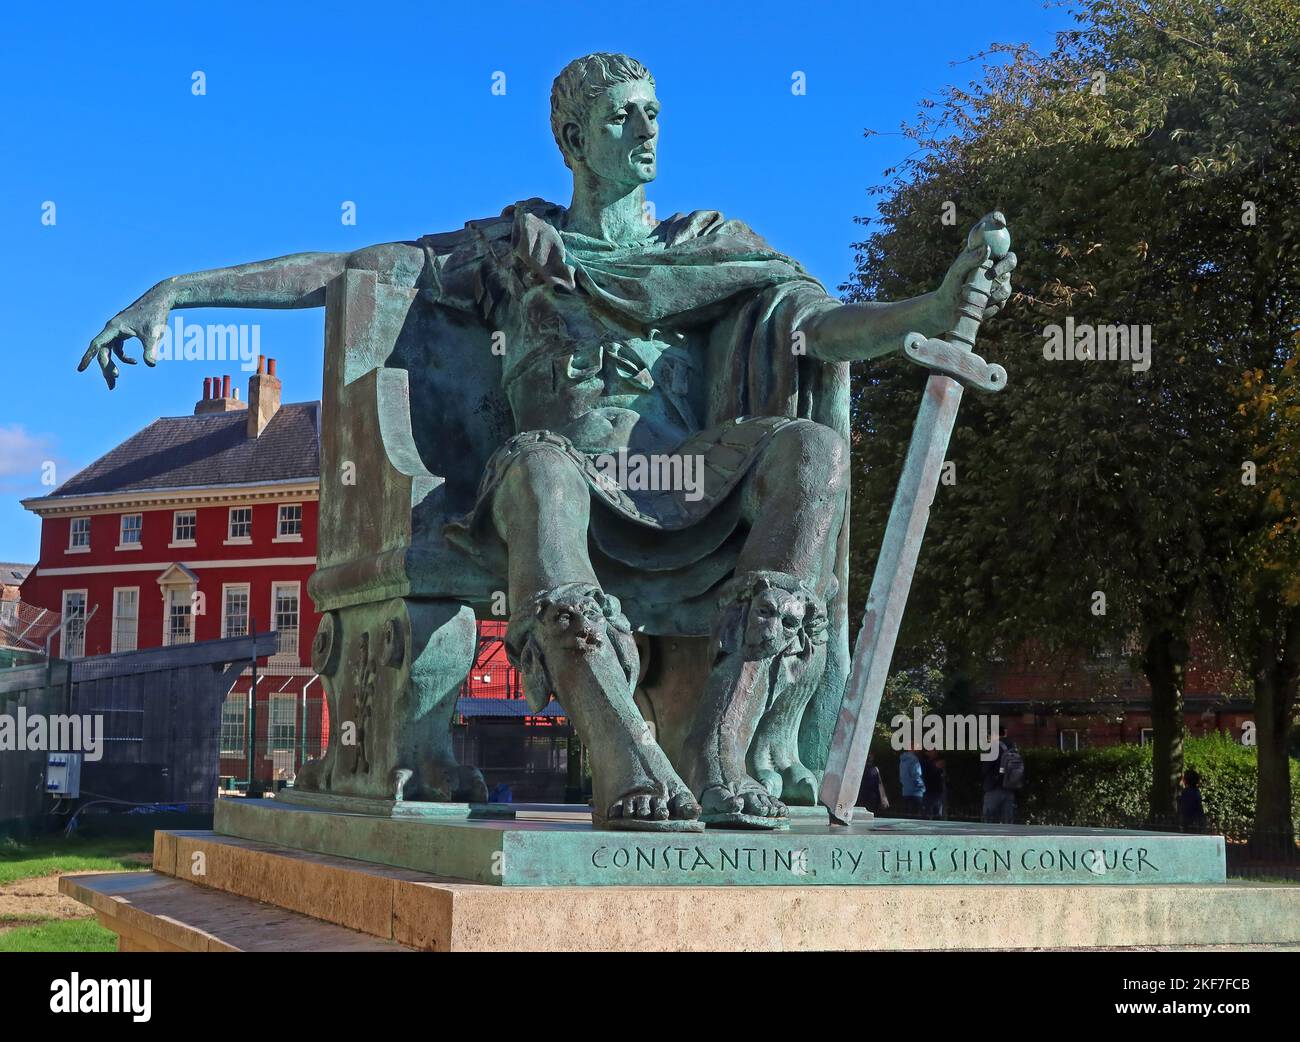 Statue de Constantine le Grand, empereur romain de 306 à 337, à York, en face de York Minster, Deangate, York, Yorkshire, Angleterre, ROYAUME-UNI, YO1 7HH Banque D'Images